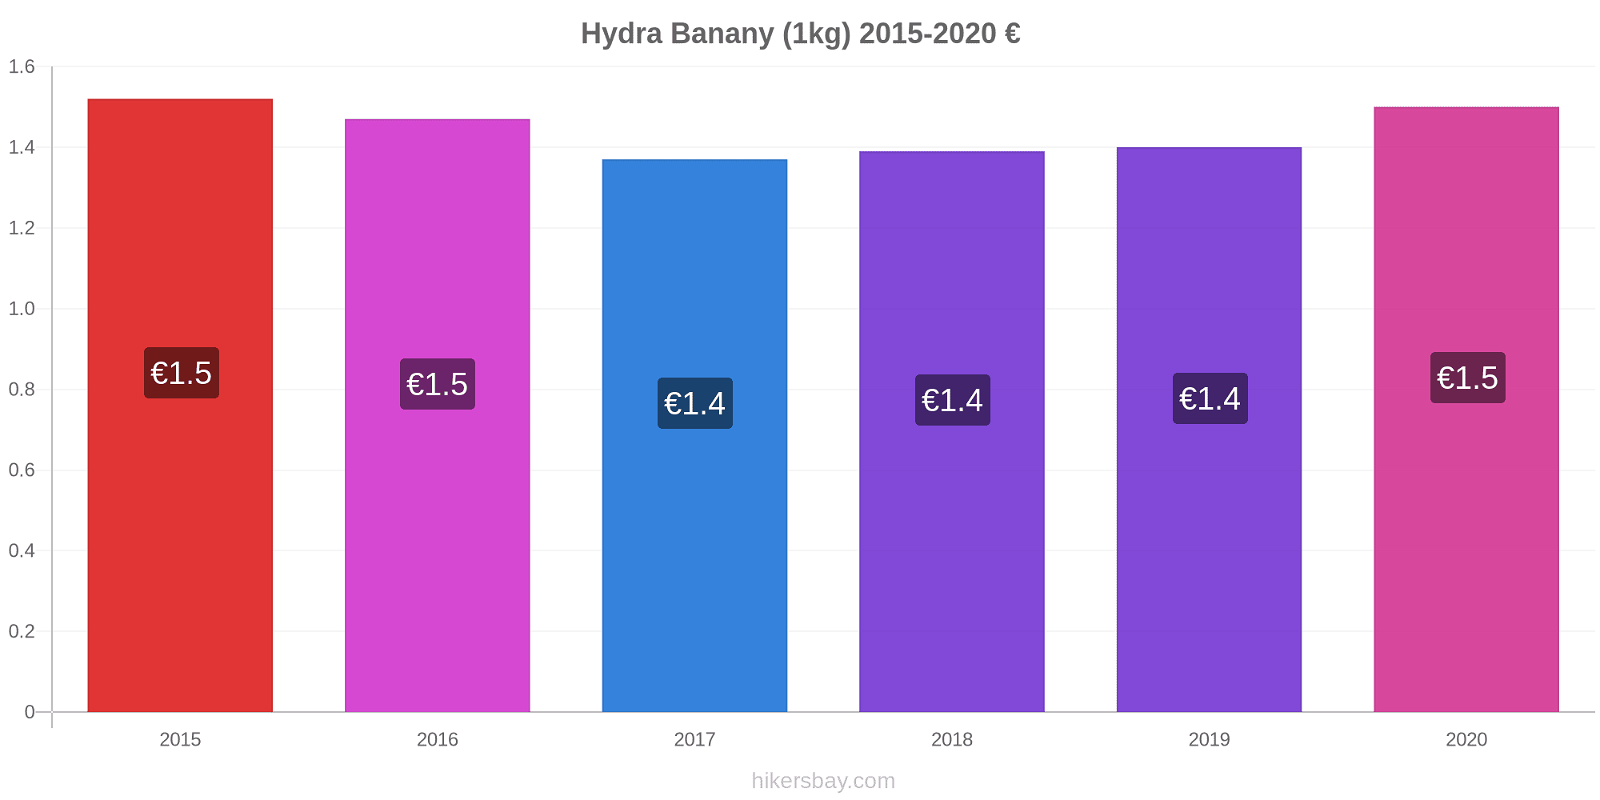 Hydra zmiany cen Banany (1kg) hikersbay.com